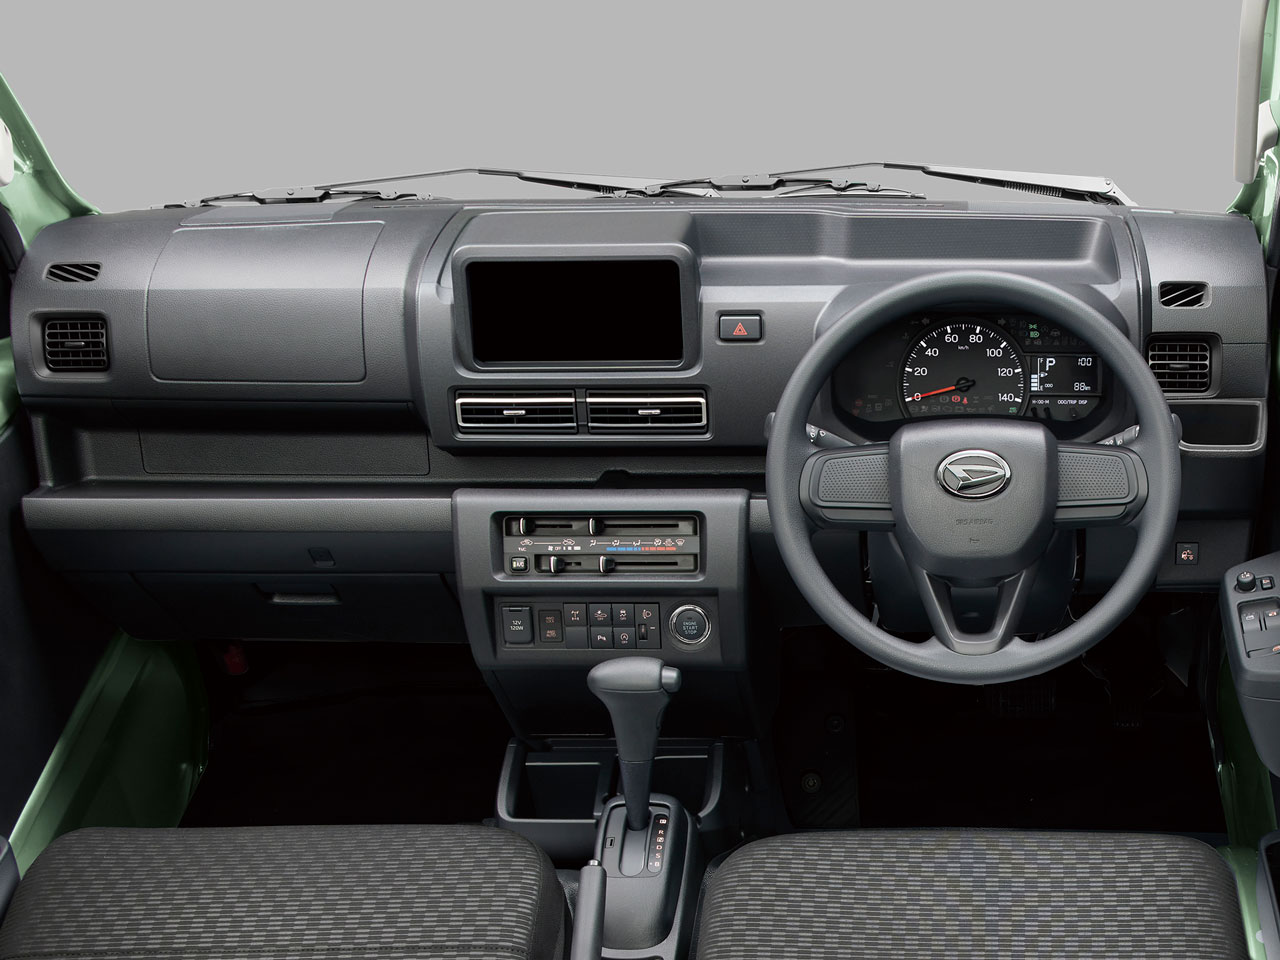 ハイゼット トラック 2014年モデル の製品画像